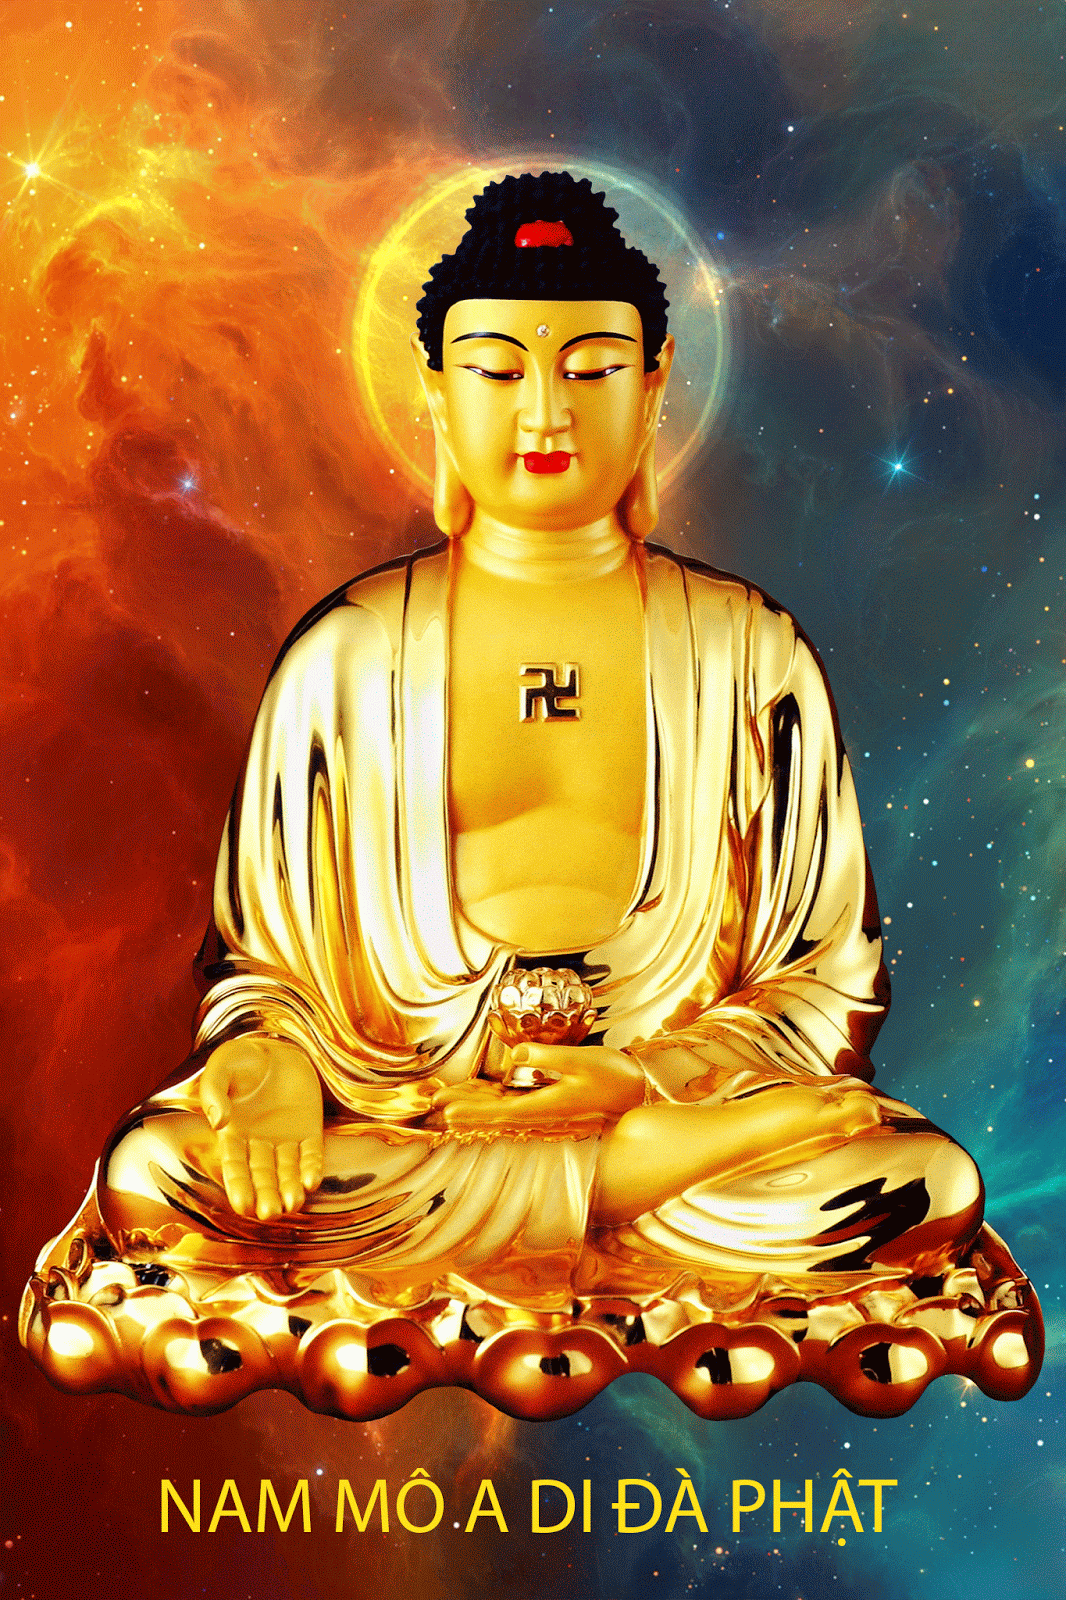 Phật A Di Đà: Phật A Di Đà là vị phật đại diệu với tình thương vô bờ. Hình ảnh Phật A Di Đà là một nguồn cảm hứng to lớn cho mọi người, giúp ta rèn luyện tâm hồn và đem lại sự bình an cho cuộc sống.